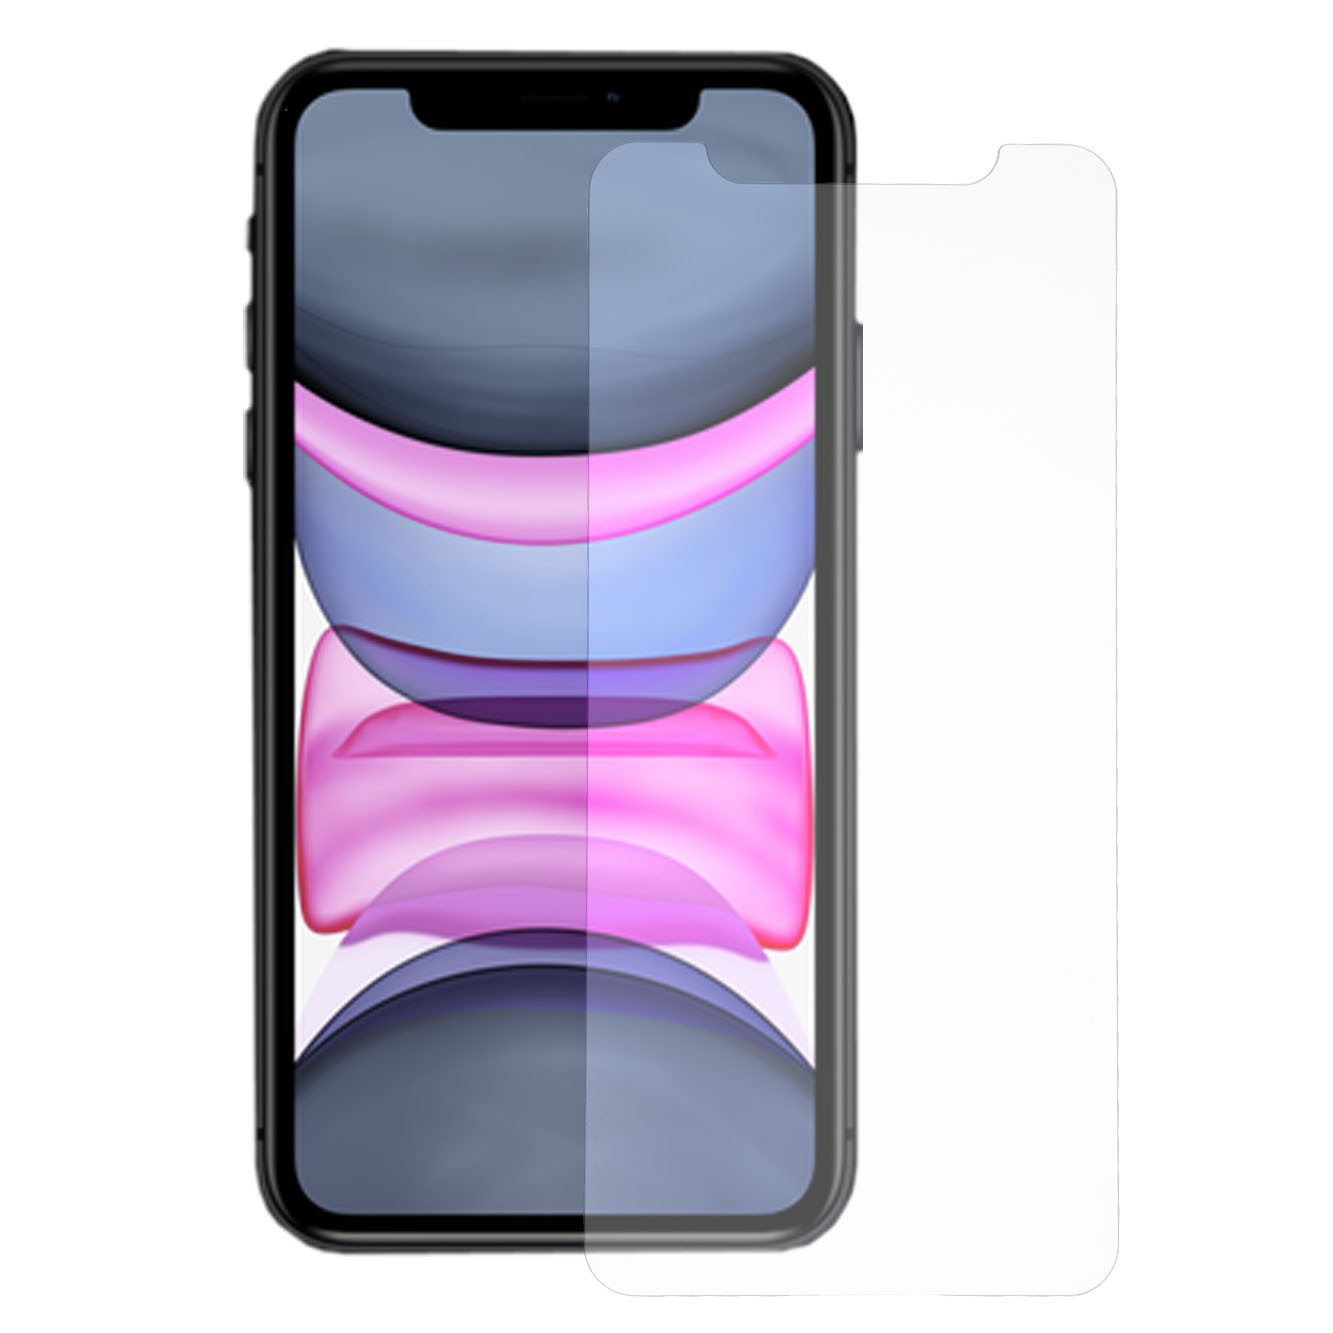 Mica protector de vidrio templado completo - iPhone 11